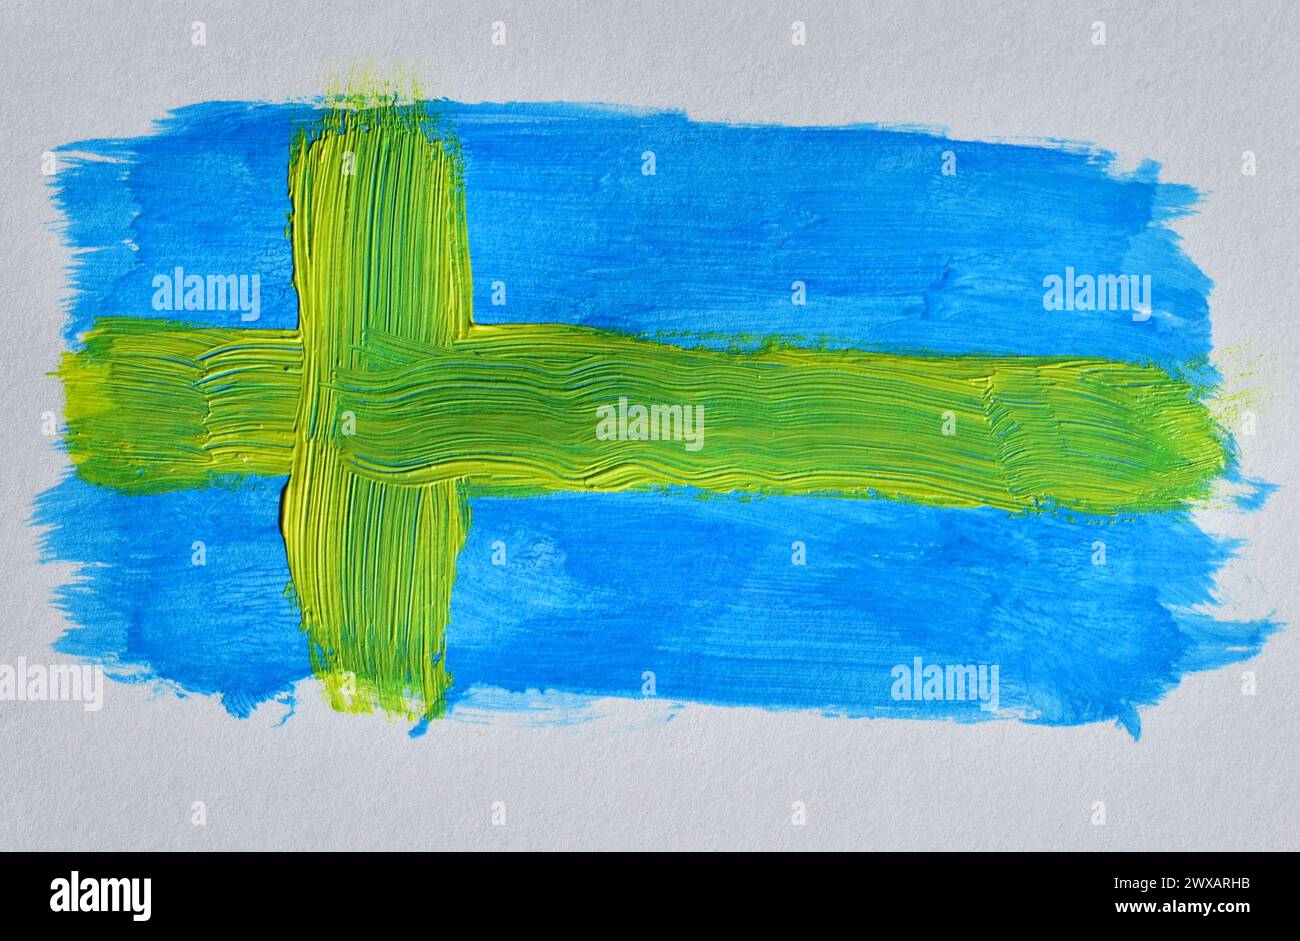 Auf einem weißen Blatt wurde eine Zeichnung mit Aquarellen gezeichnet, die wie die Flagge Schwedens aussehen. Stockfoto